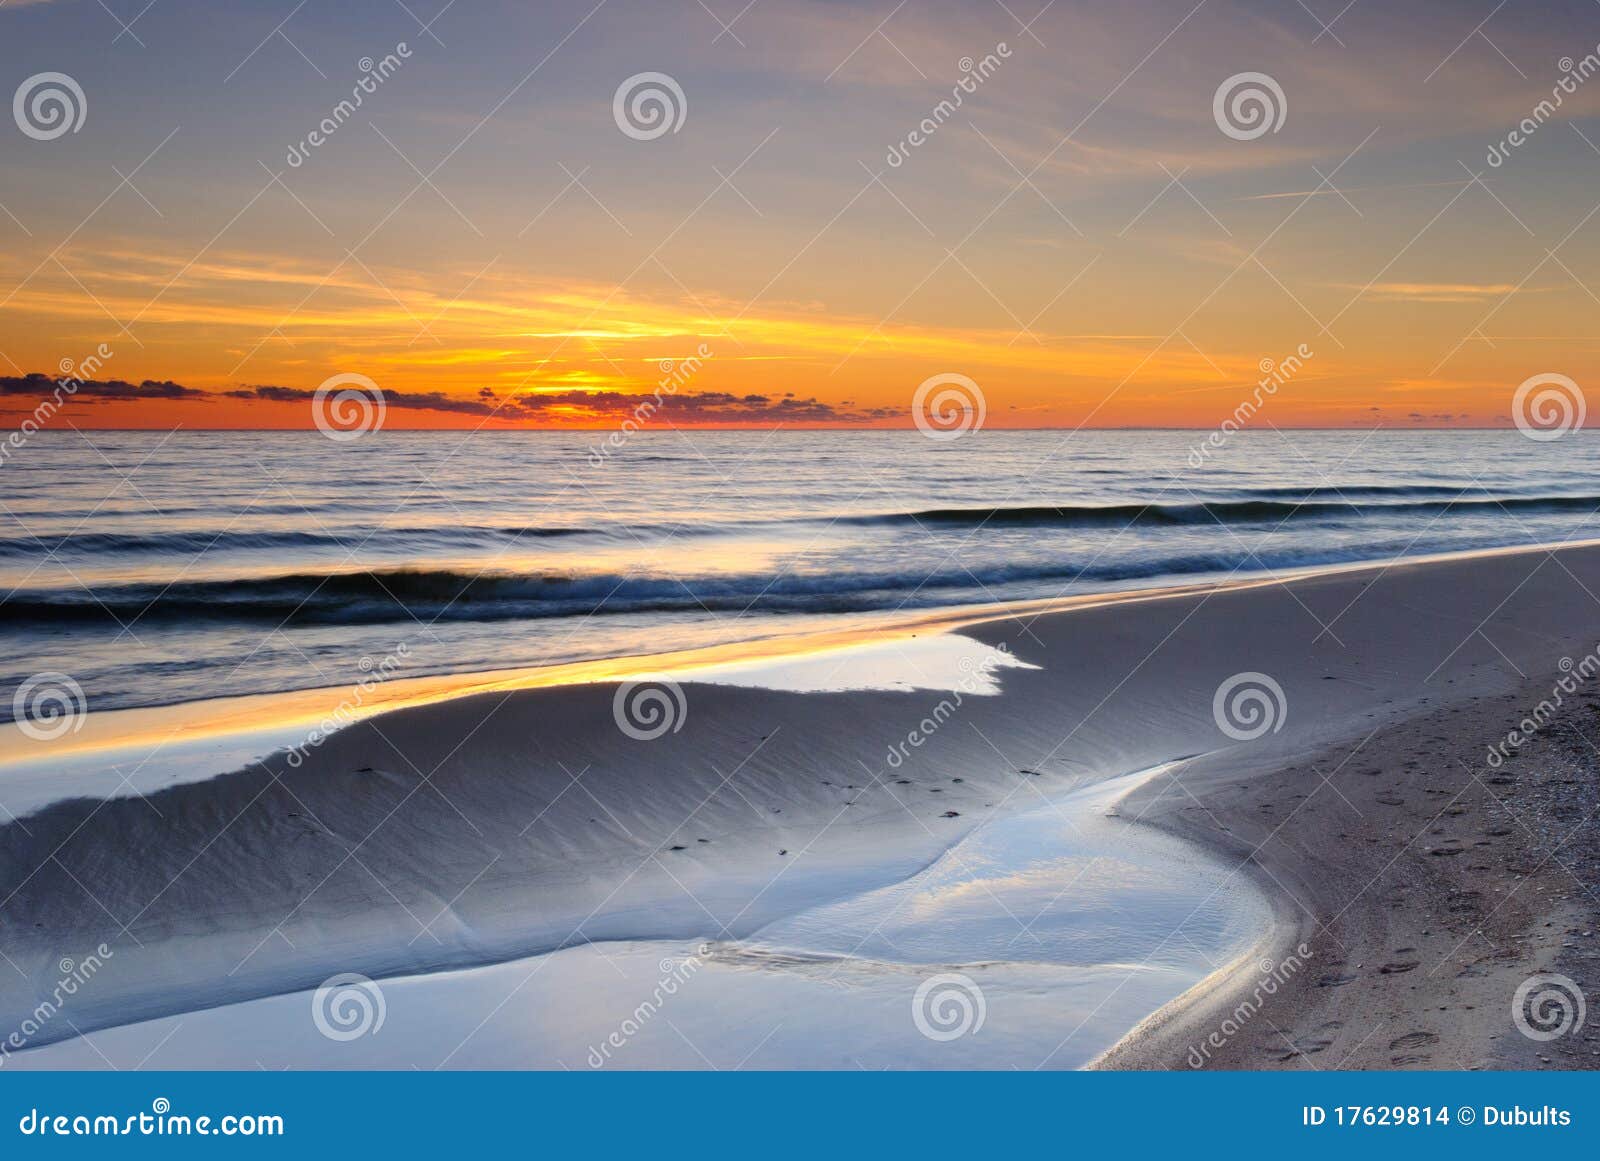 baltic seashore